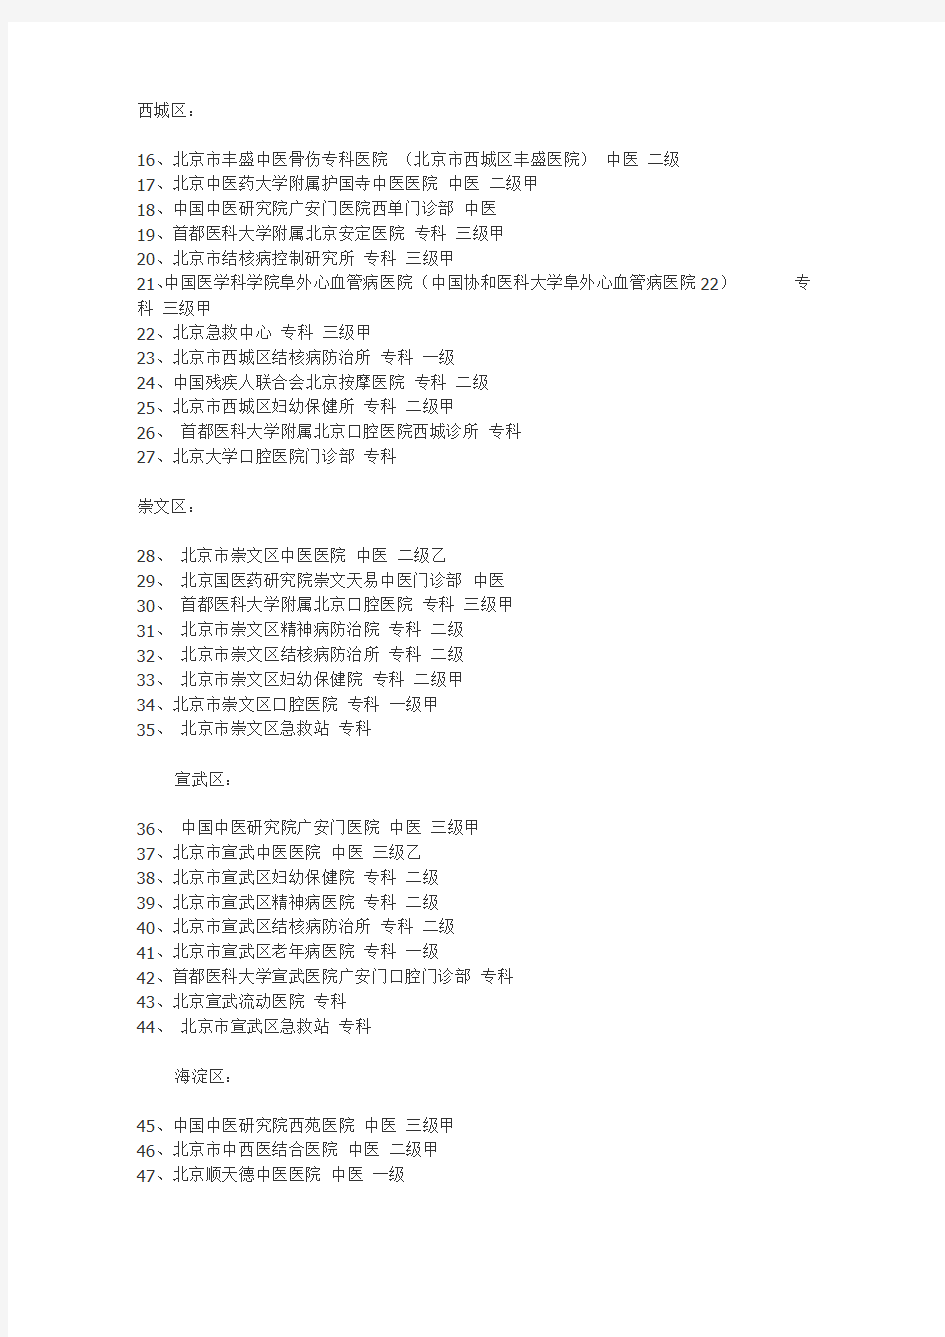 最新北京市基本医疗保险A类定点医疗机构及定点医院名单